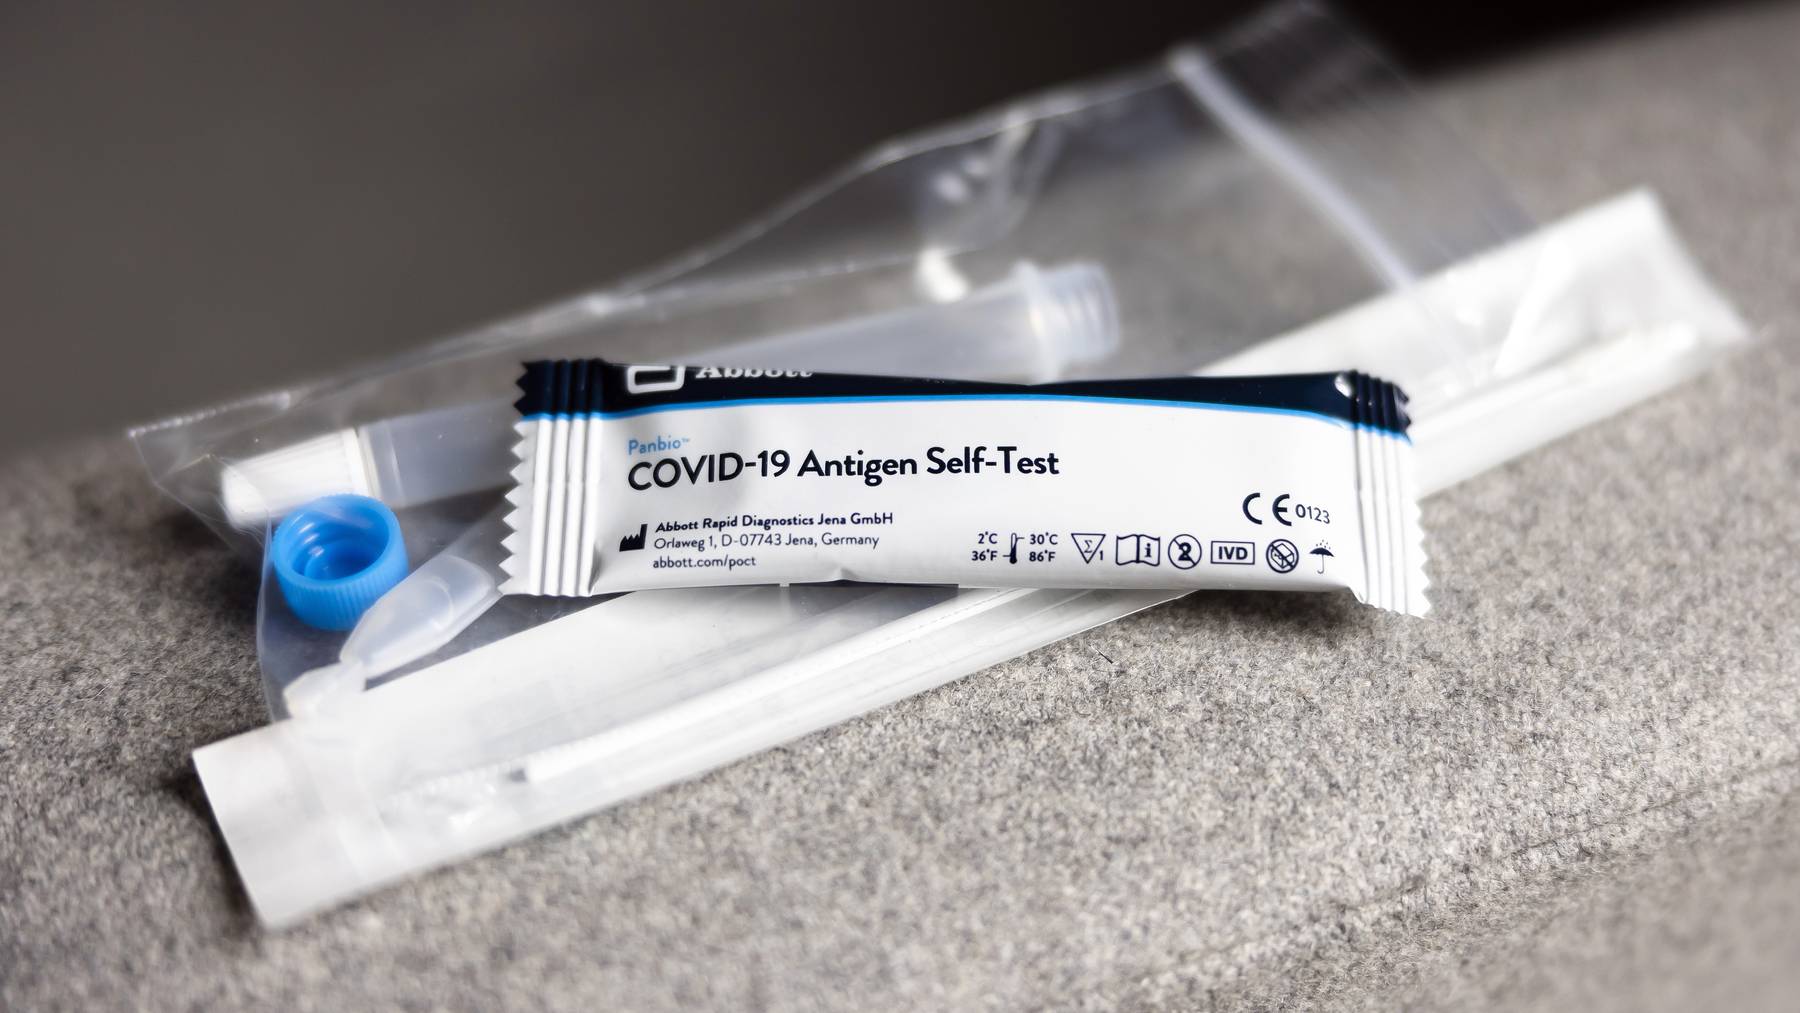 Die Komponenten eines Abbott Covid-19 Antigen-Selbsttests aus einer Apotheke, aufgenommen am Donnerstag, 16. Dezember 2021 in Zuerich. Vielerorts sind Covid-19 Antigen-Selbsttests wegen hoher Nachfrage ausverkauft und nicht lieferbar.